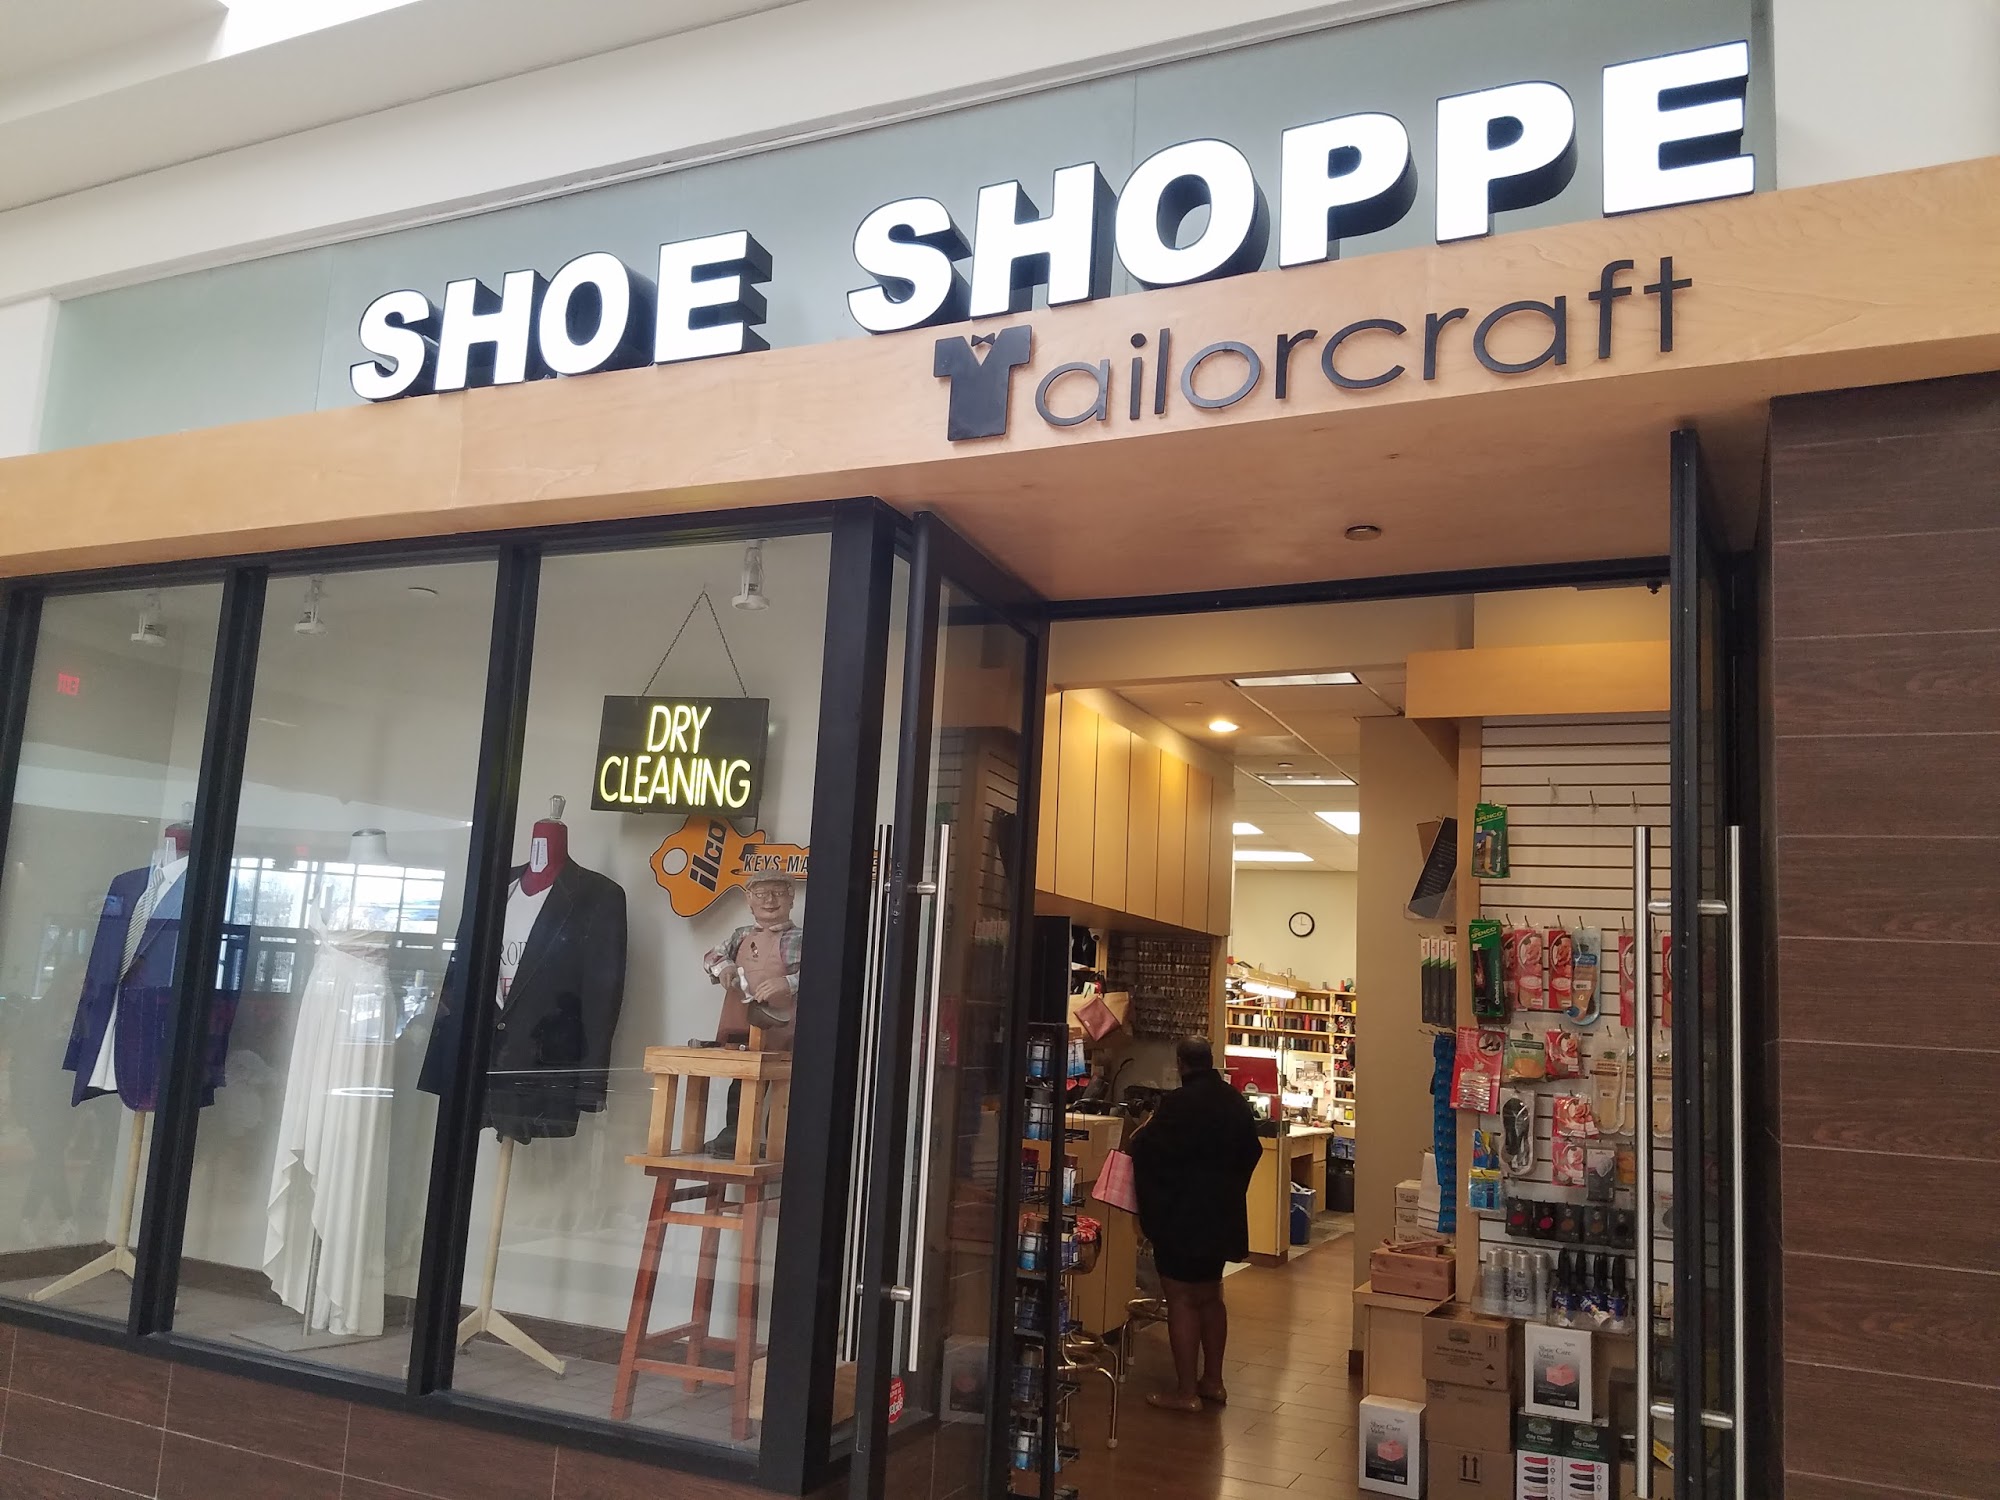 Shoe Shoppe